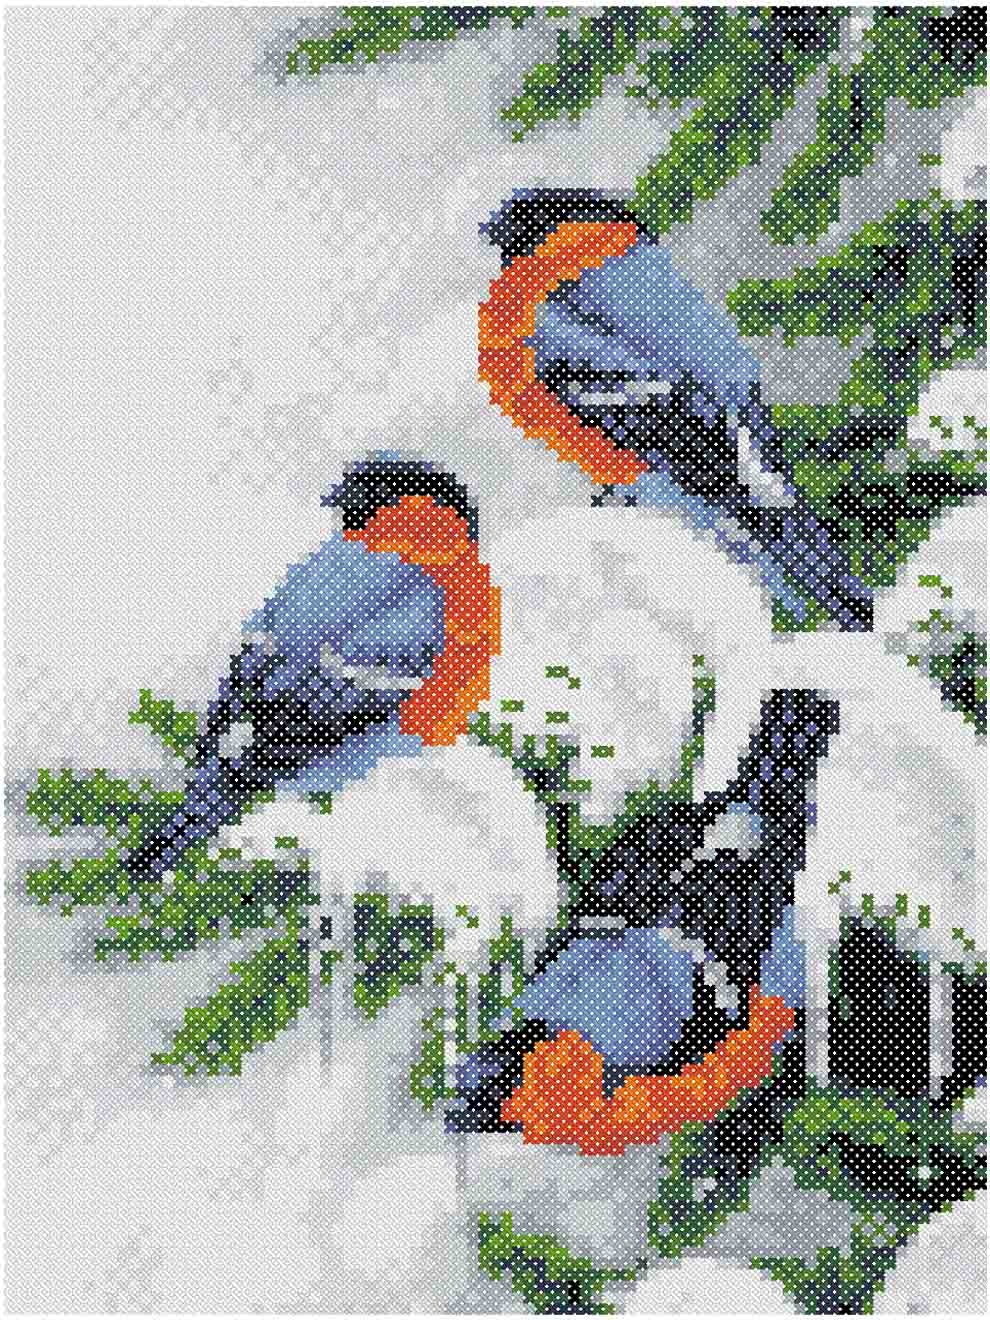 Снегири - Канва с нанесенным рисунком для вышивки крестом 17х17 см